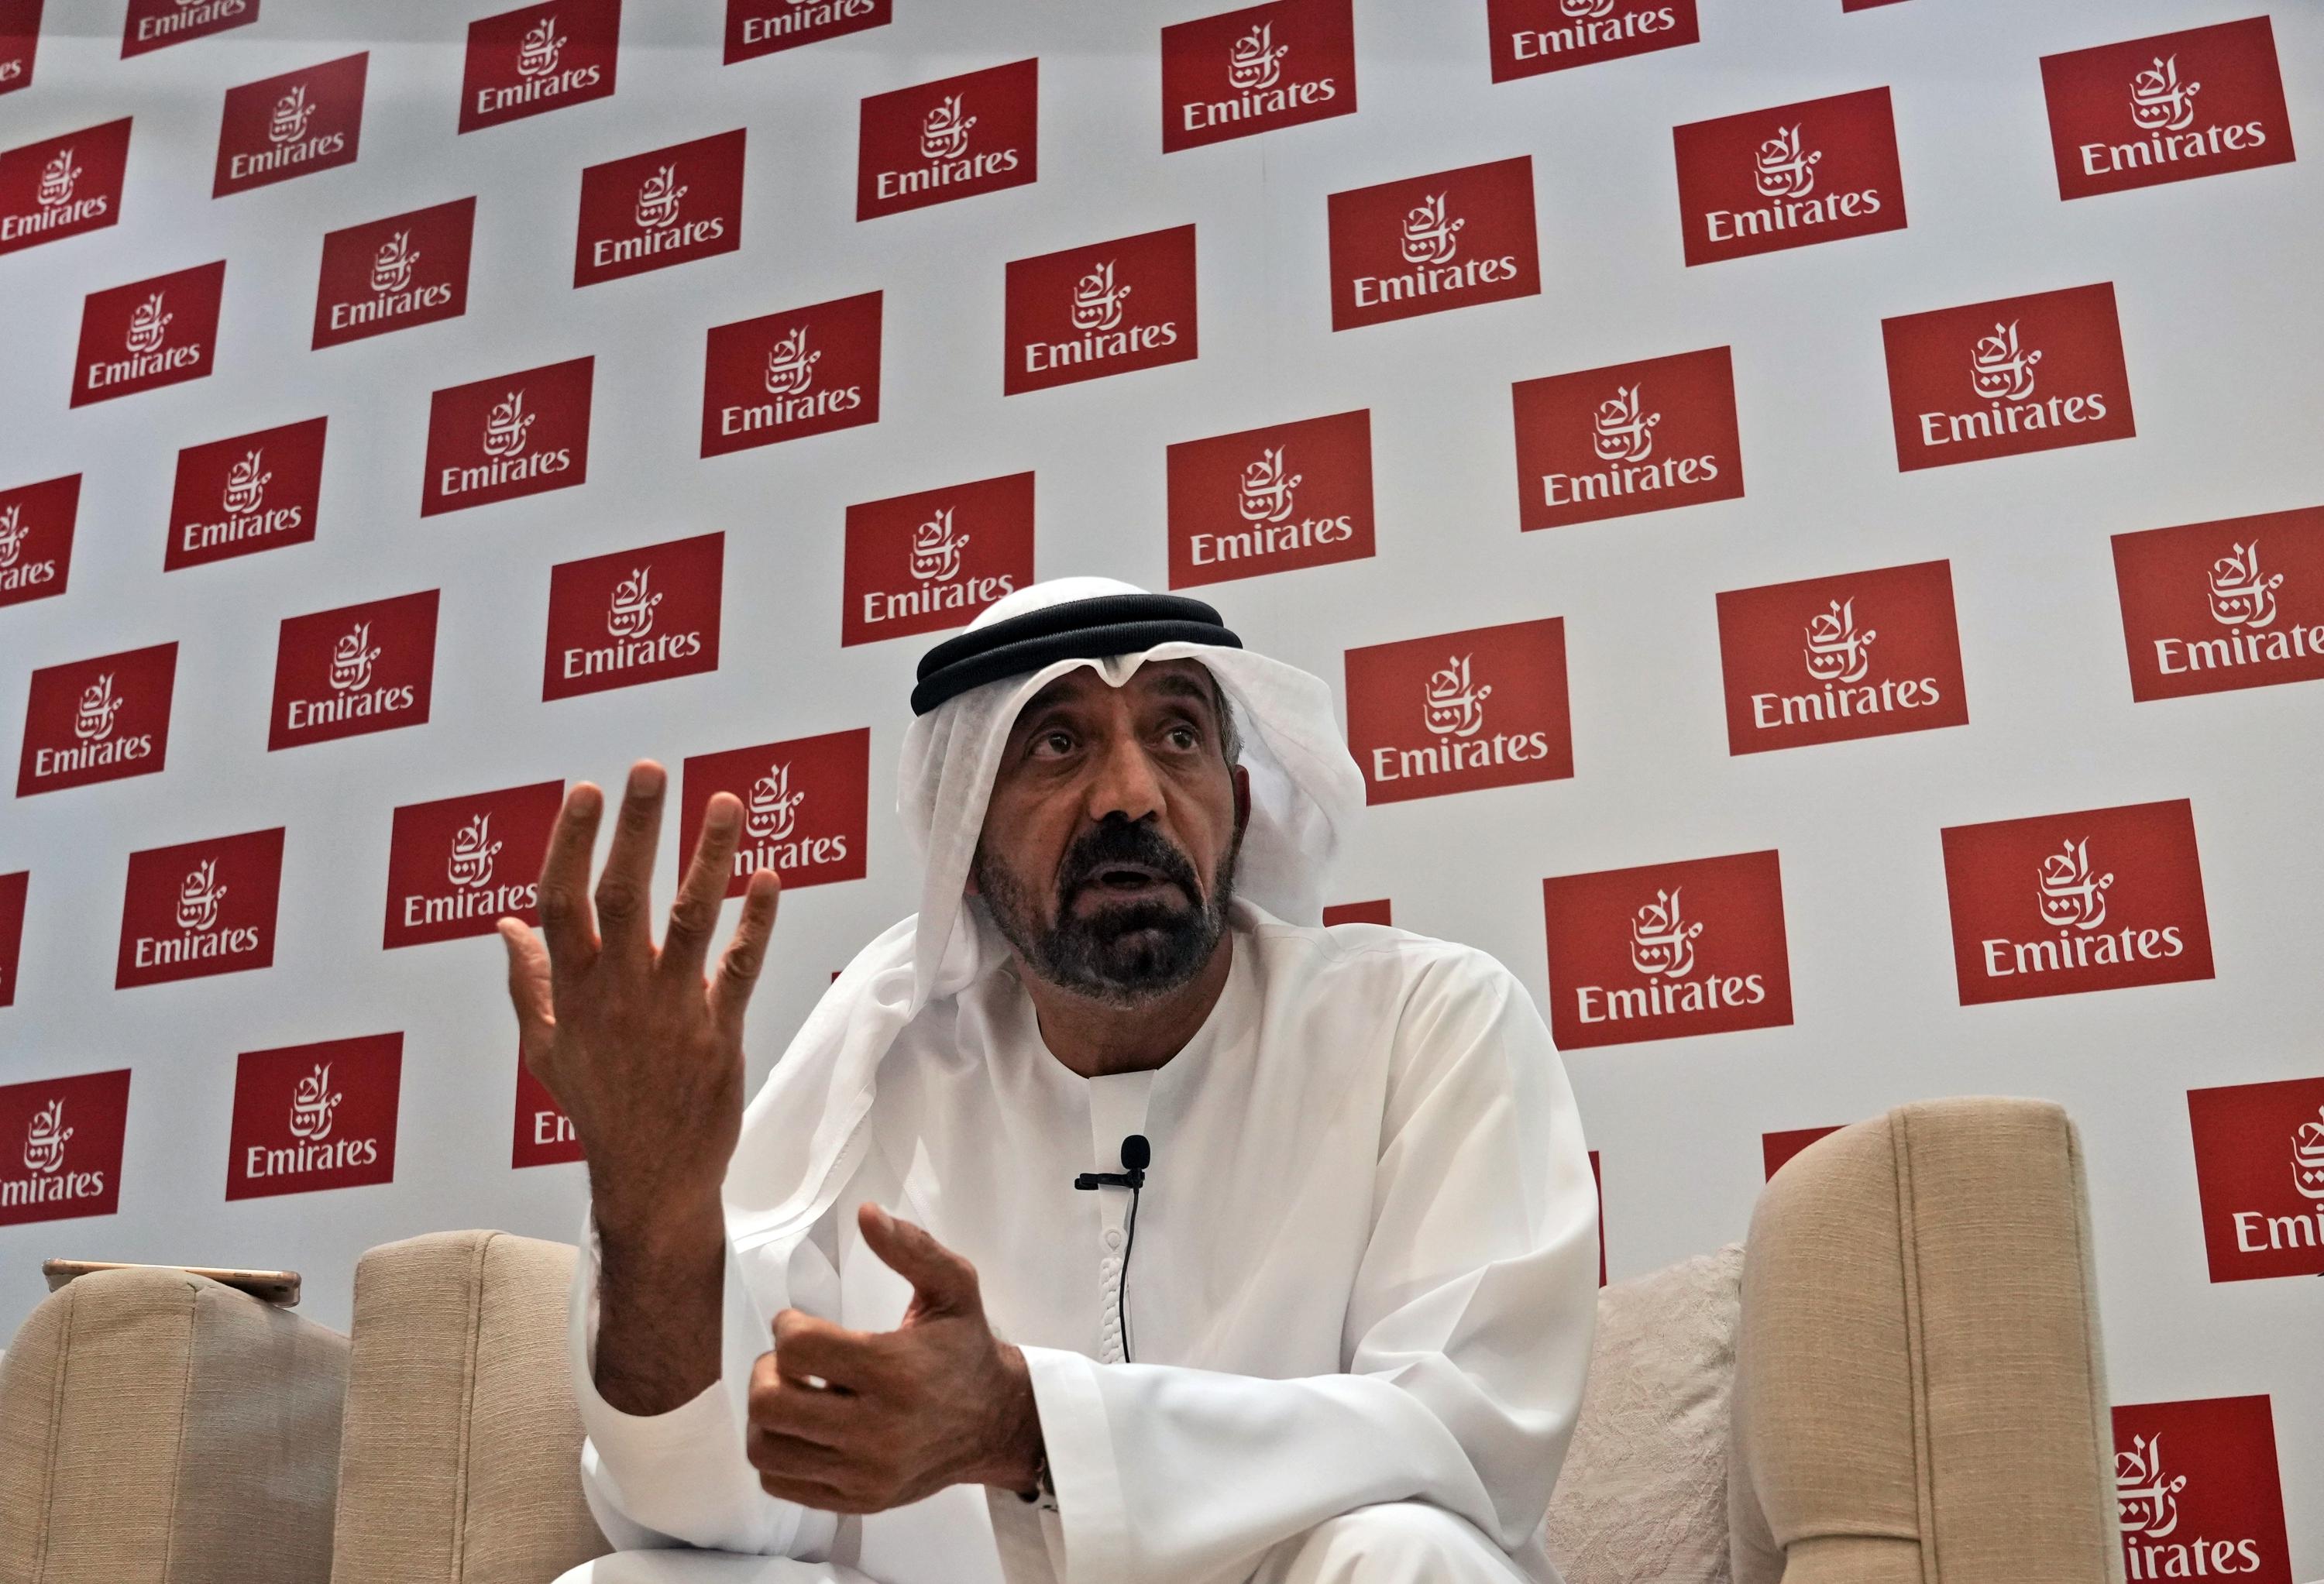 Emirates to start paying back Dubai for its B lifeline